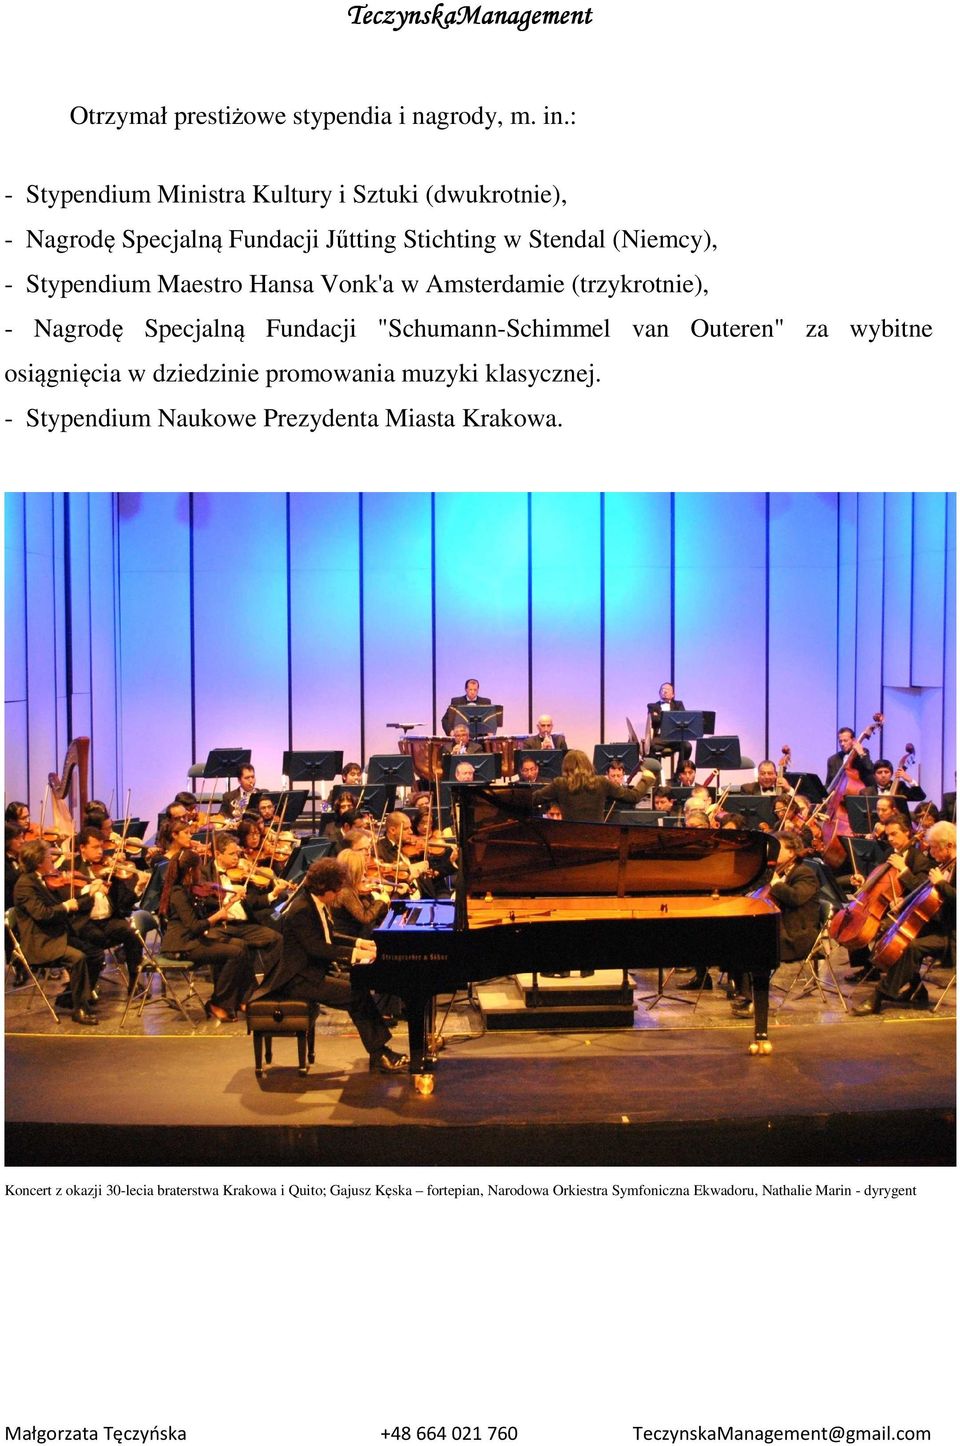 Maestro Hansa Vonk'a w Amsterdamie (trzykrotnie), - Nagrodę Specjalną Fundacji "Schumann-Schimmel van Outeren" za wybitne osiągnięcia w